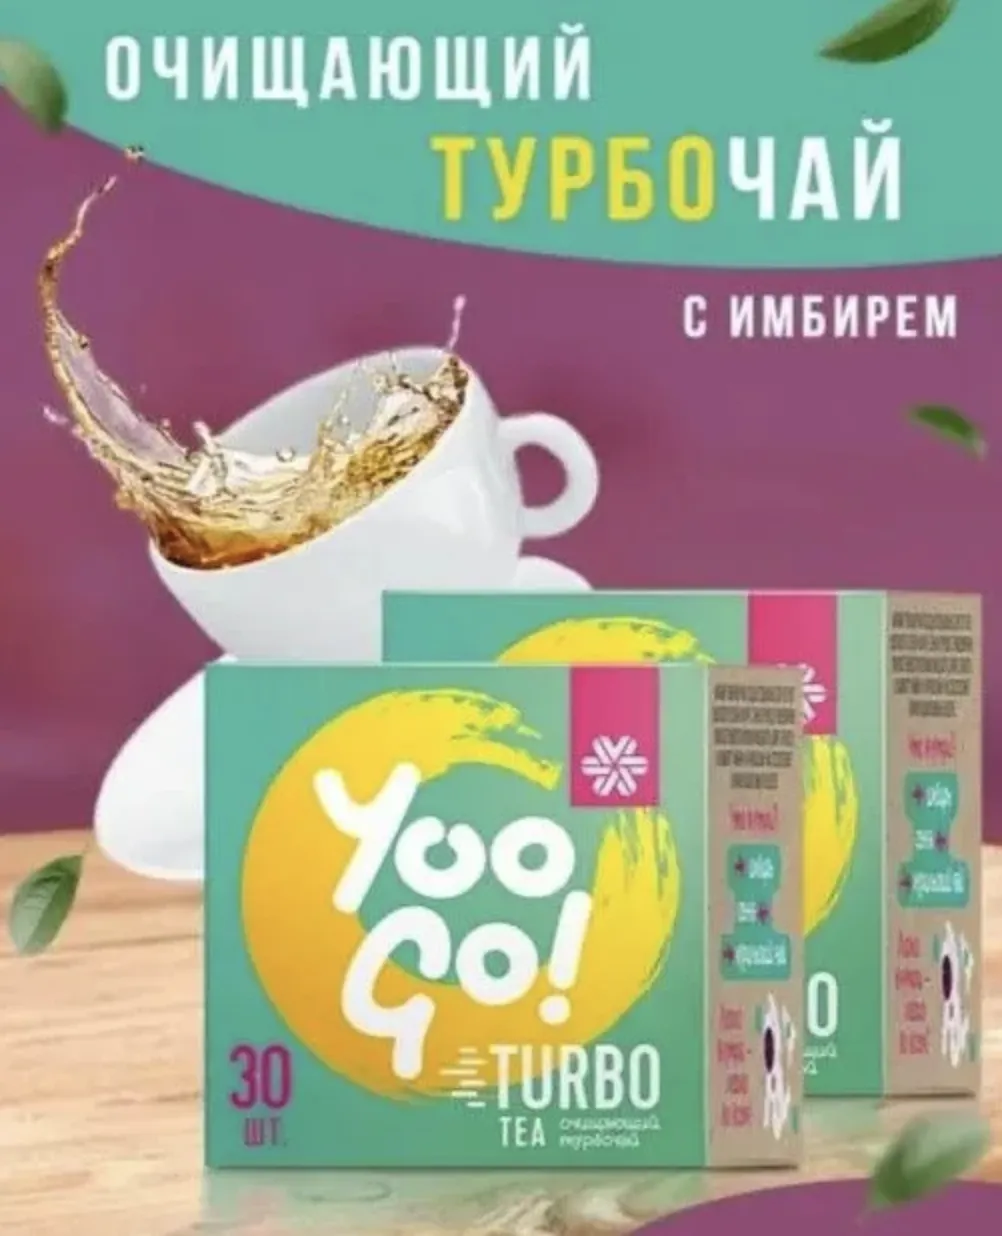 Очищающий чай Turbo Tea 2 штуки по 30 пакетов#1